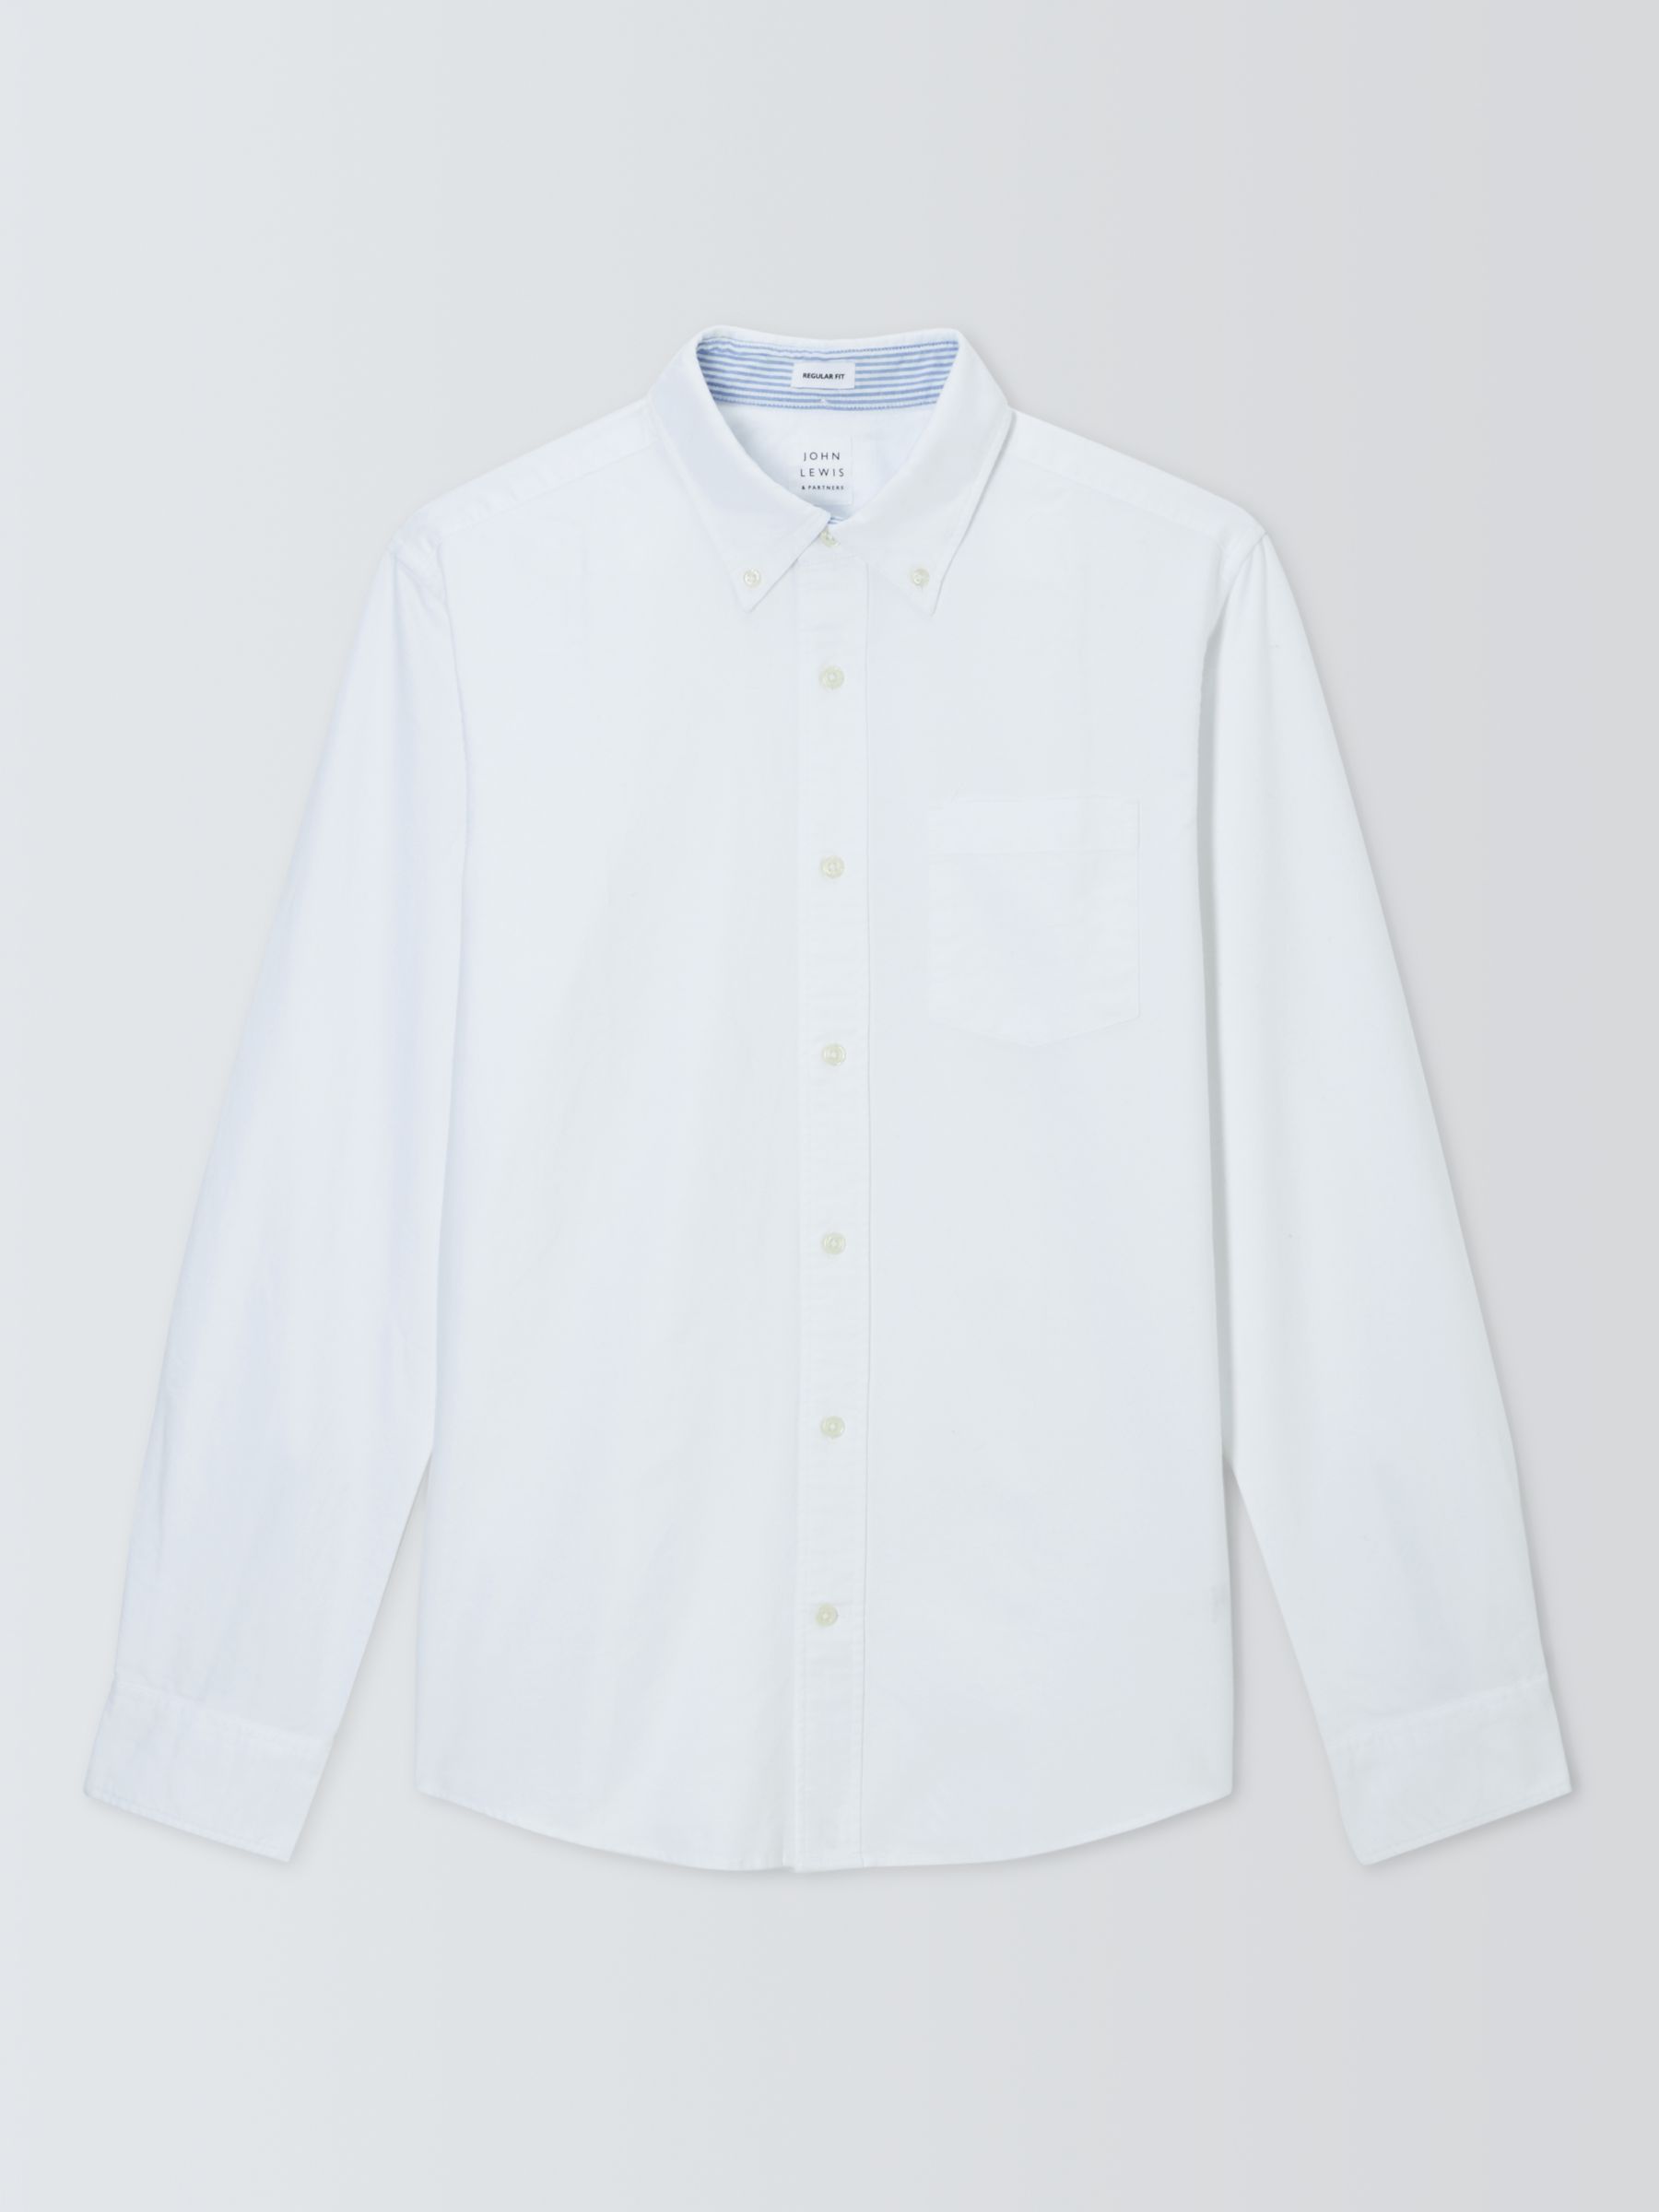 John Lewis Regular Fit Stripe Trim Oxford Shirt, White at John Lewis ...